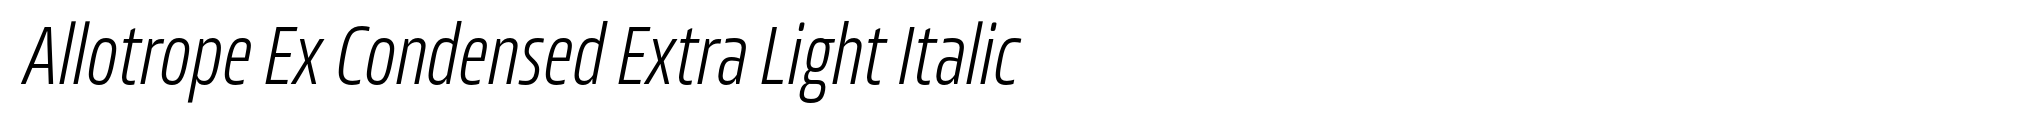 Allotrope Ex Condensed Extra Light Italic image